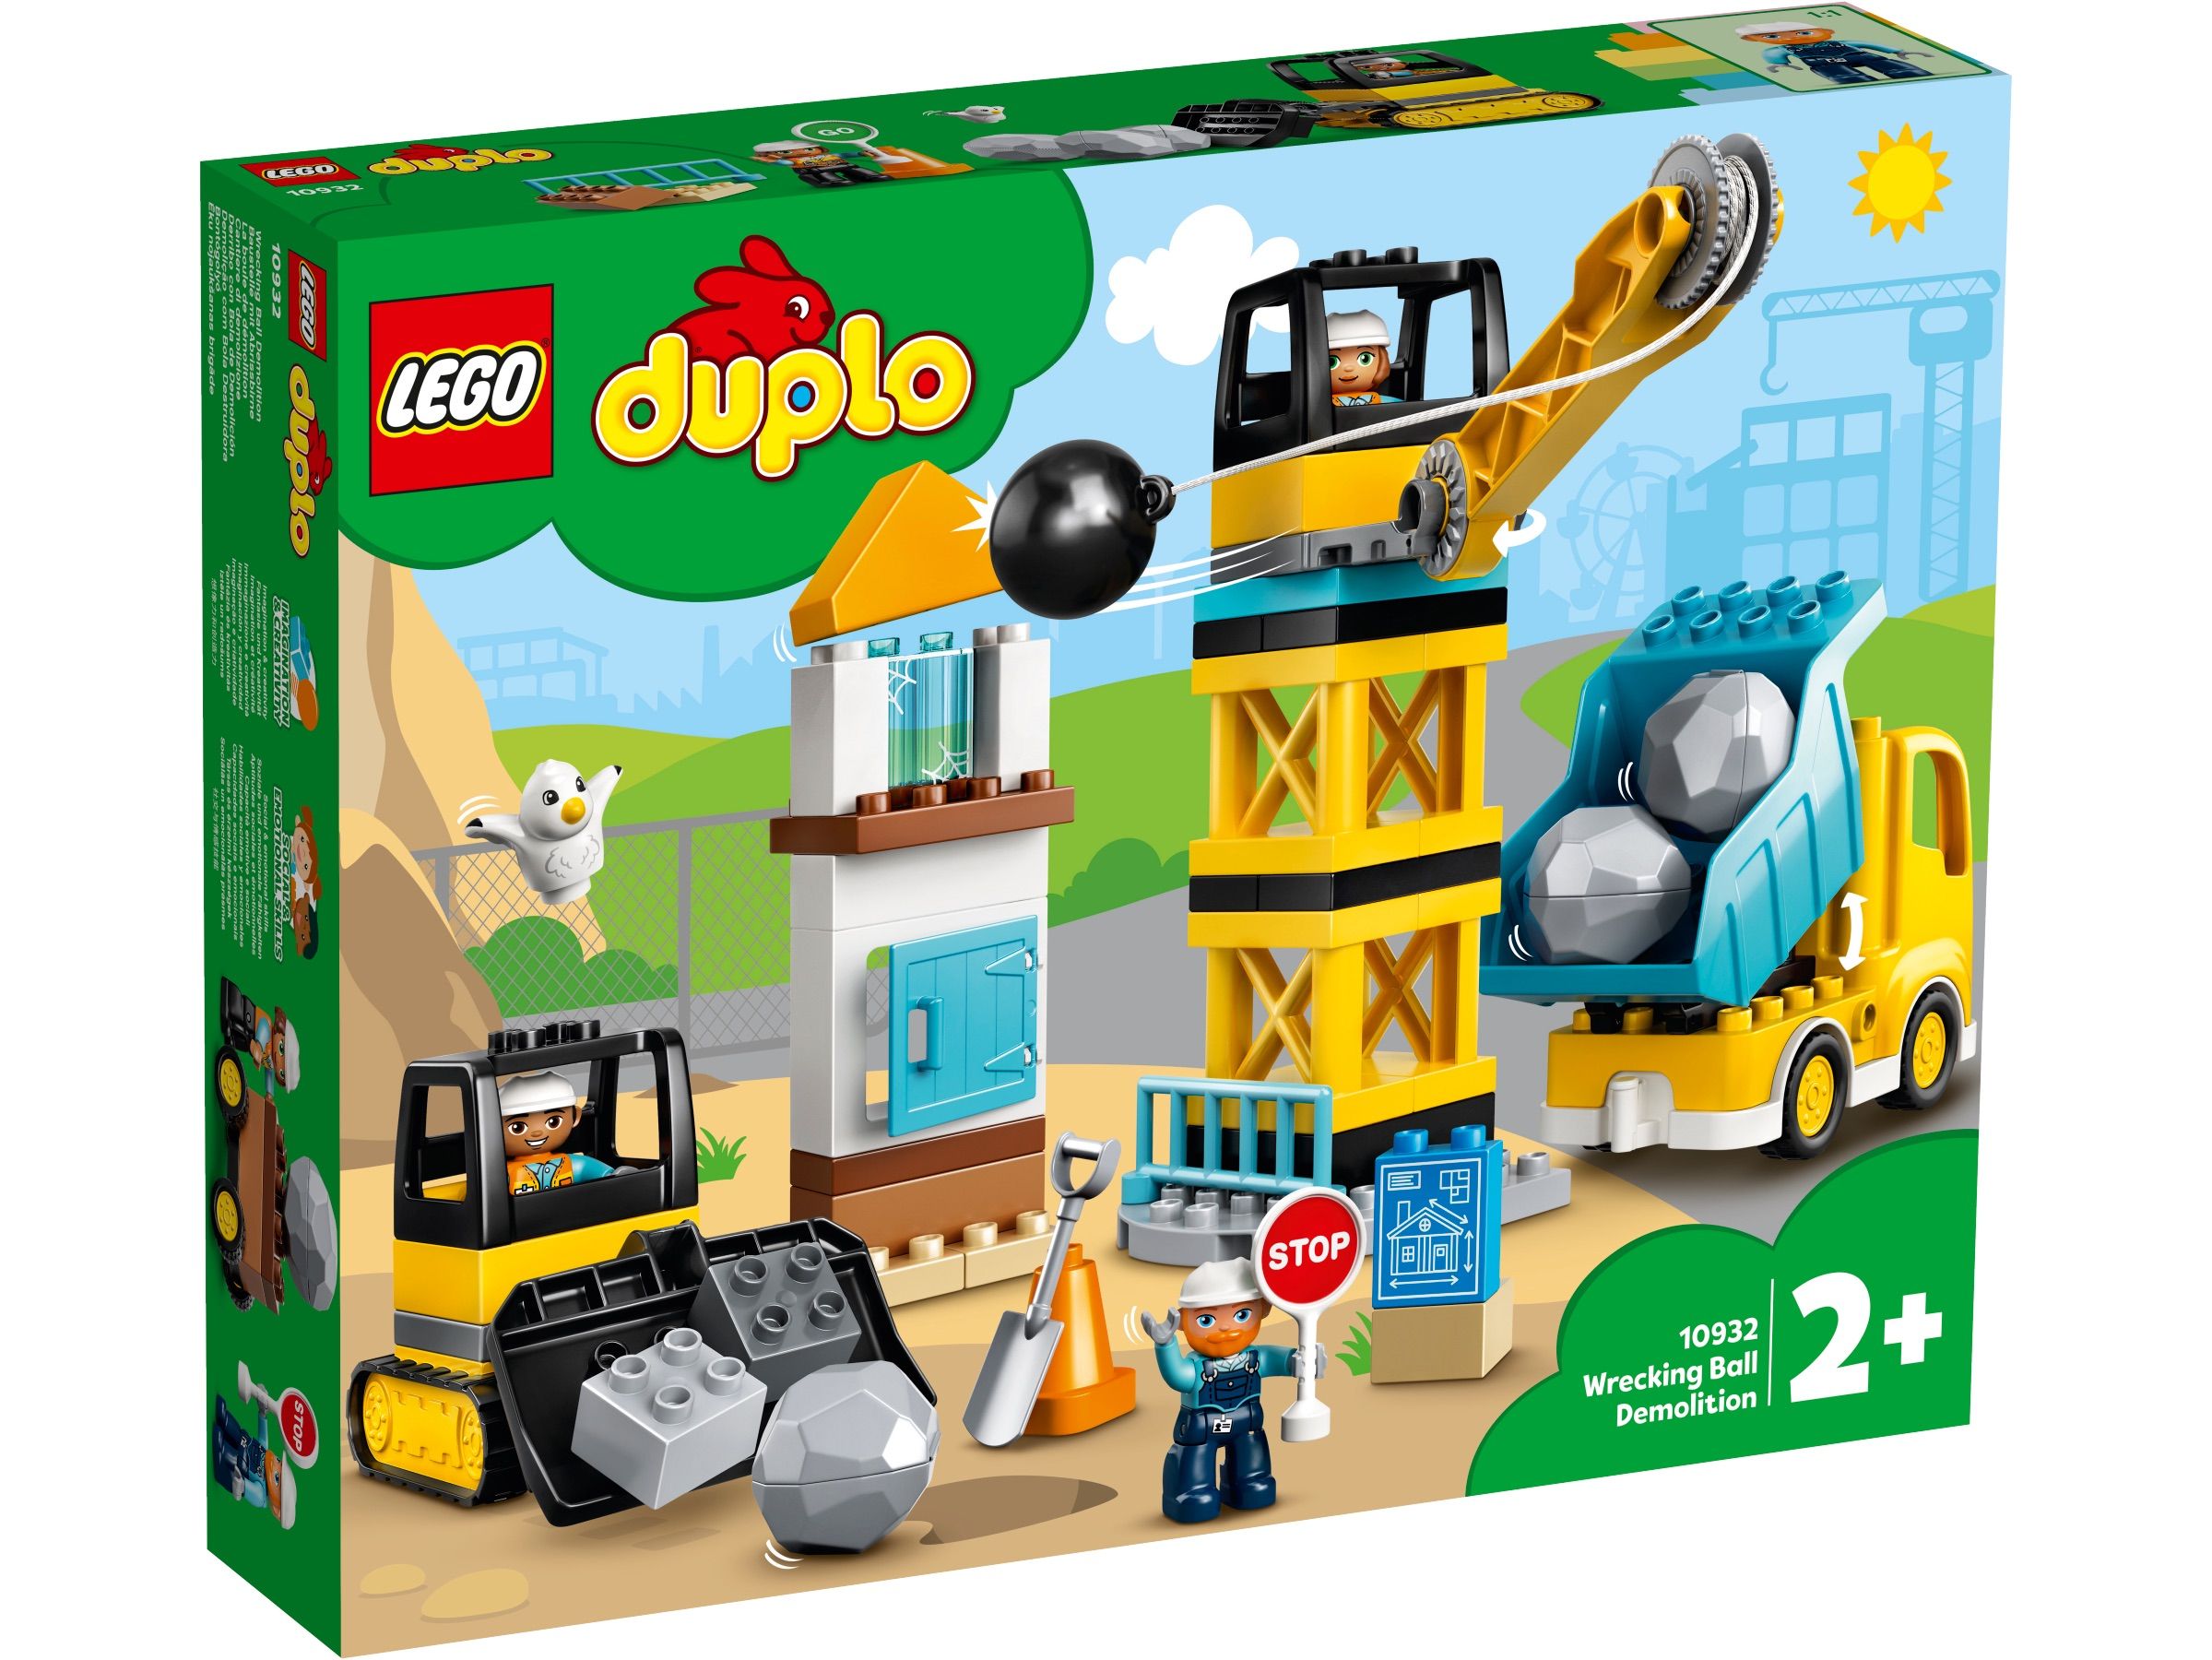 LEGO-DUPLO-Construction-Rozbiorka-kula-wyburzeniowa-1